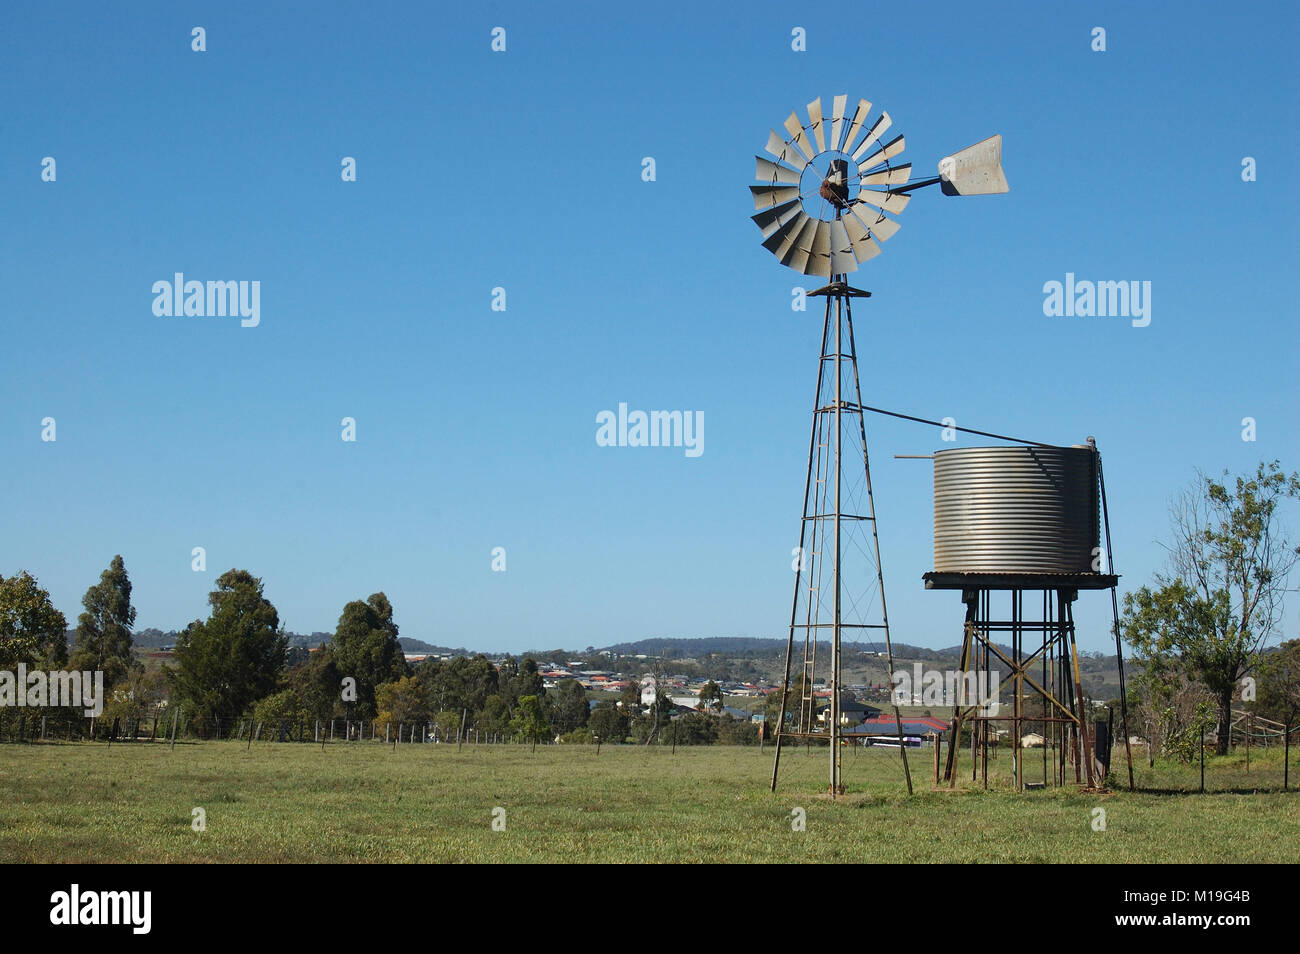 El molino de viento y tankstand en el paddock, Queensland, Australia. Los molinos de viento se usan comúnmente para el bombeo de agua desde los orificios o presas para abrevaderos para el ganado. Foto de stock